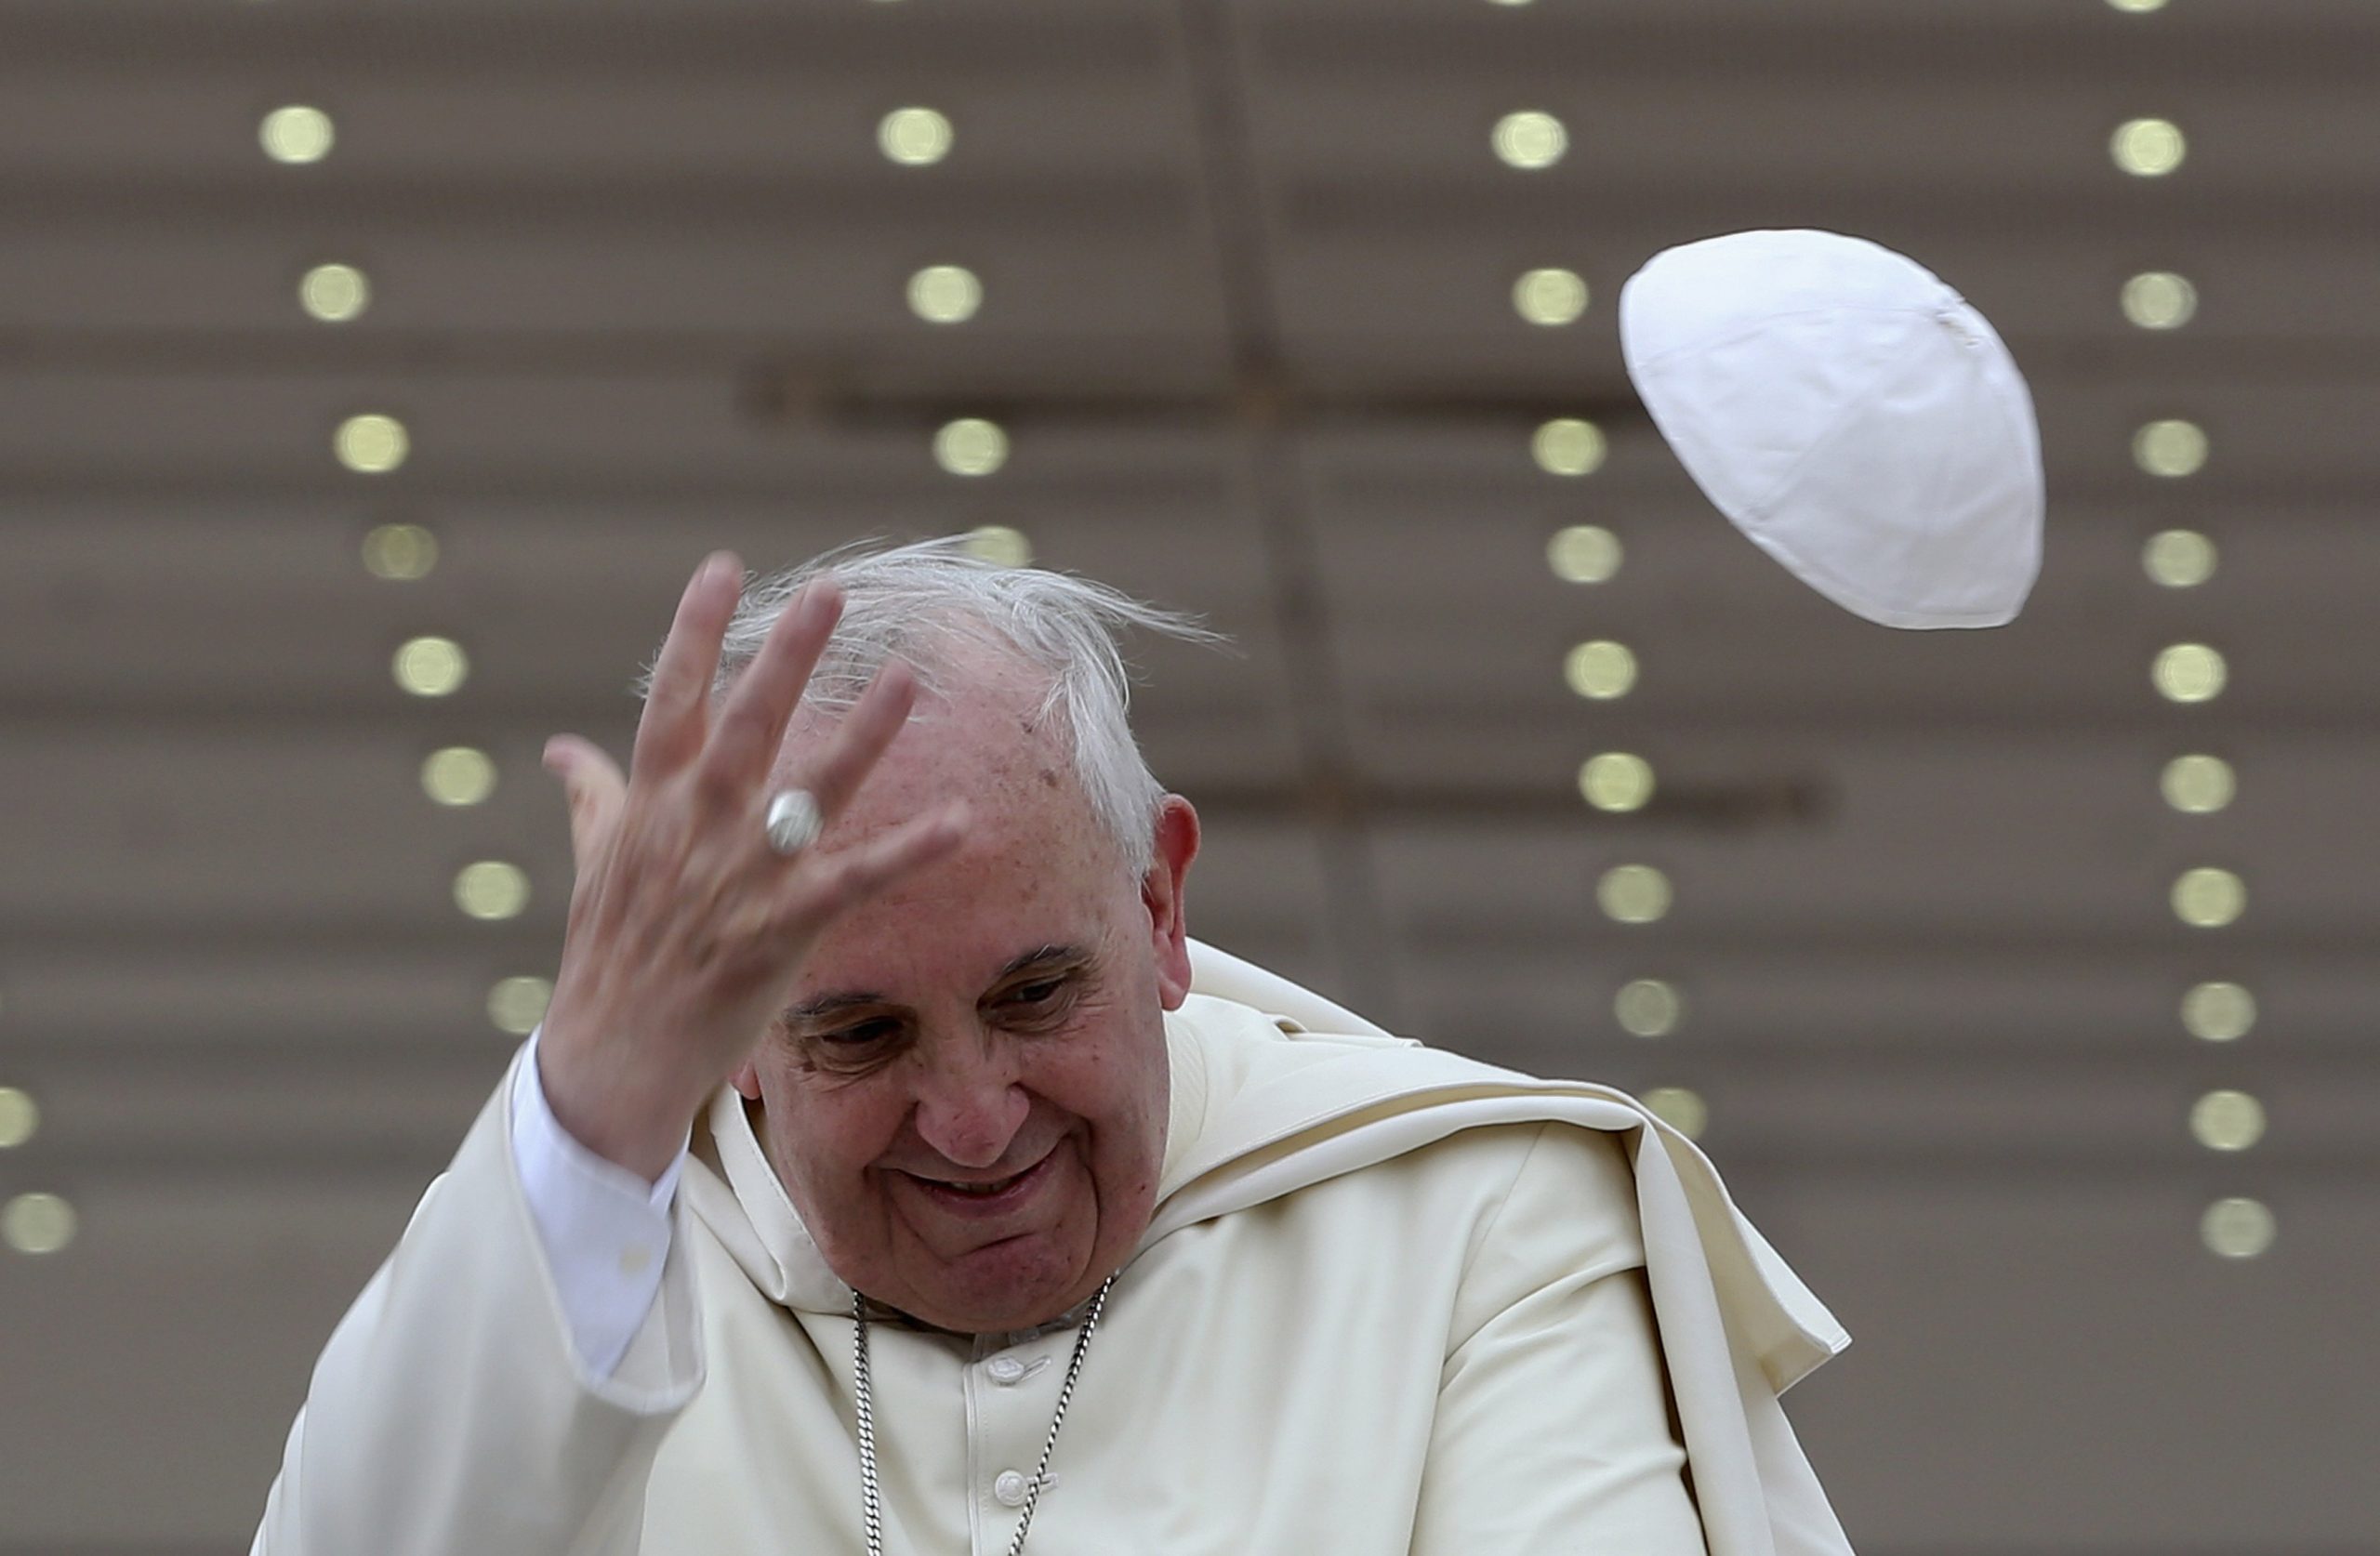 Subastan gorro del Papa Francisco que se voló en el aeropuerto de Quito.